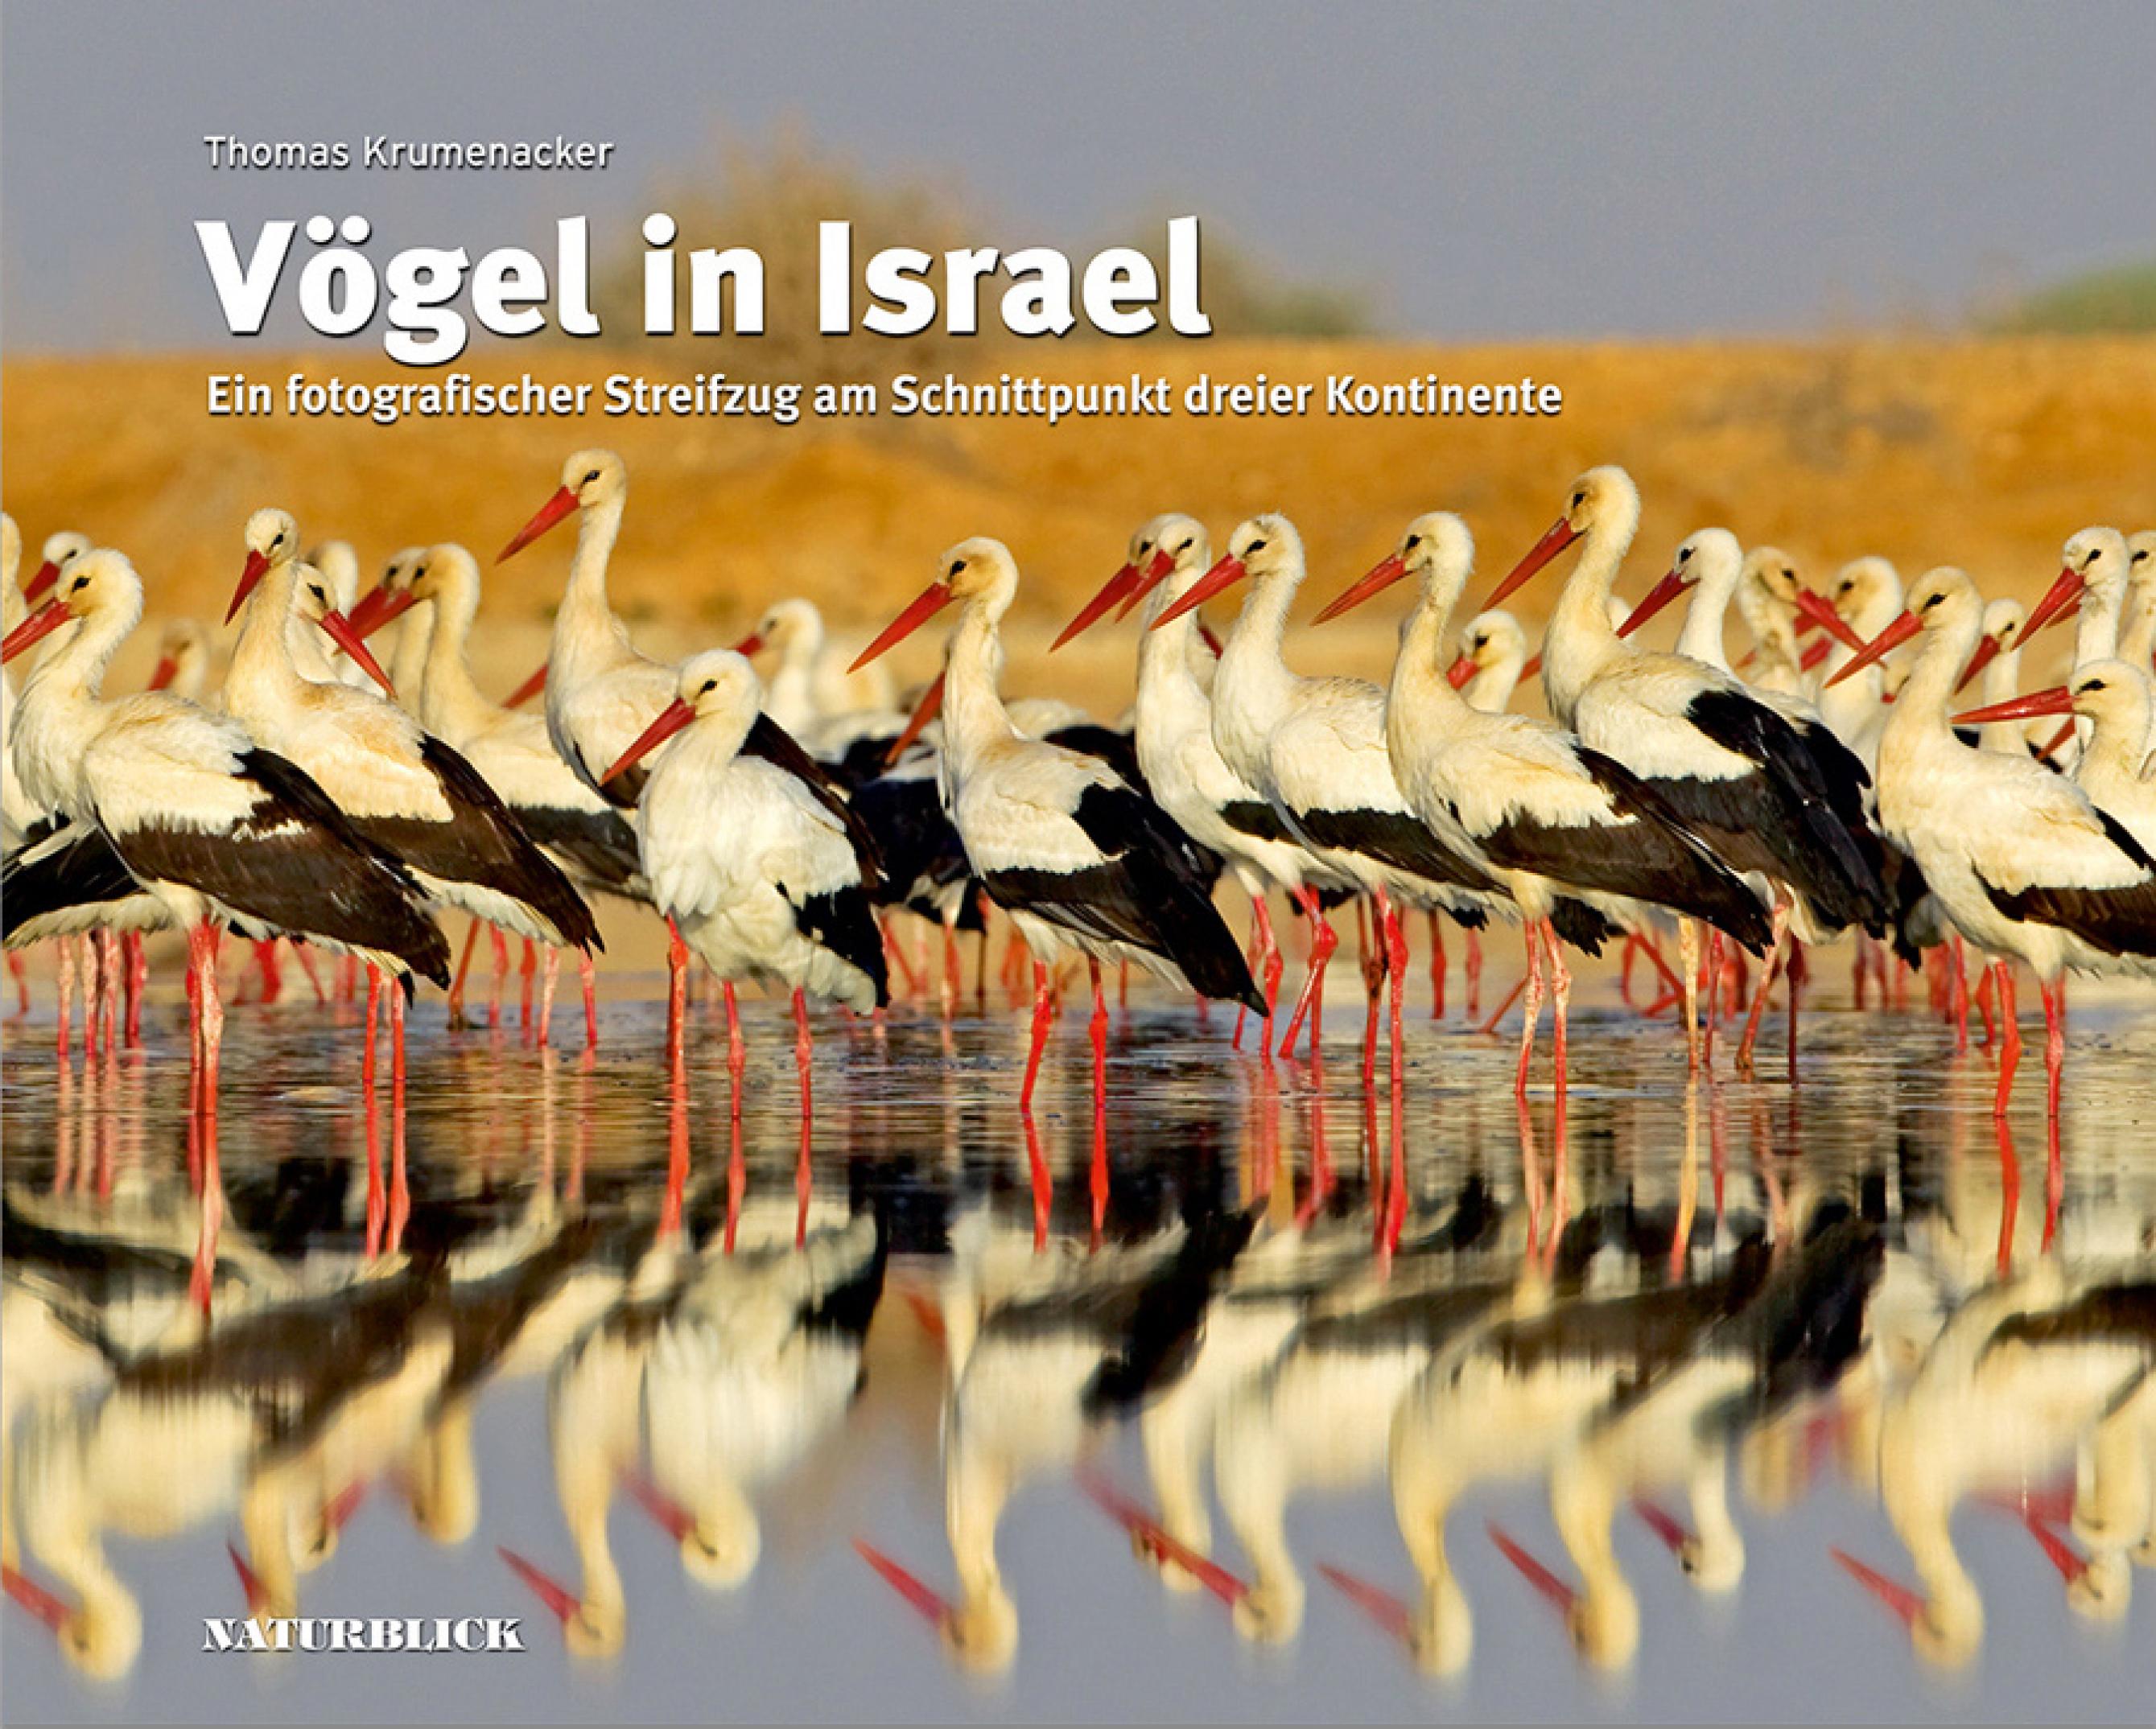 Das Buchcover von Vögel in Israel, es zeigt eine Gruppe Weißstörche